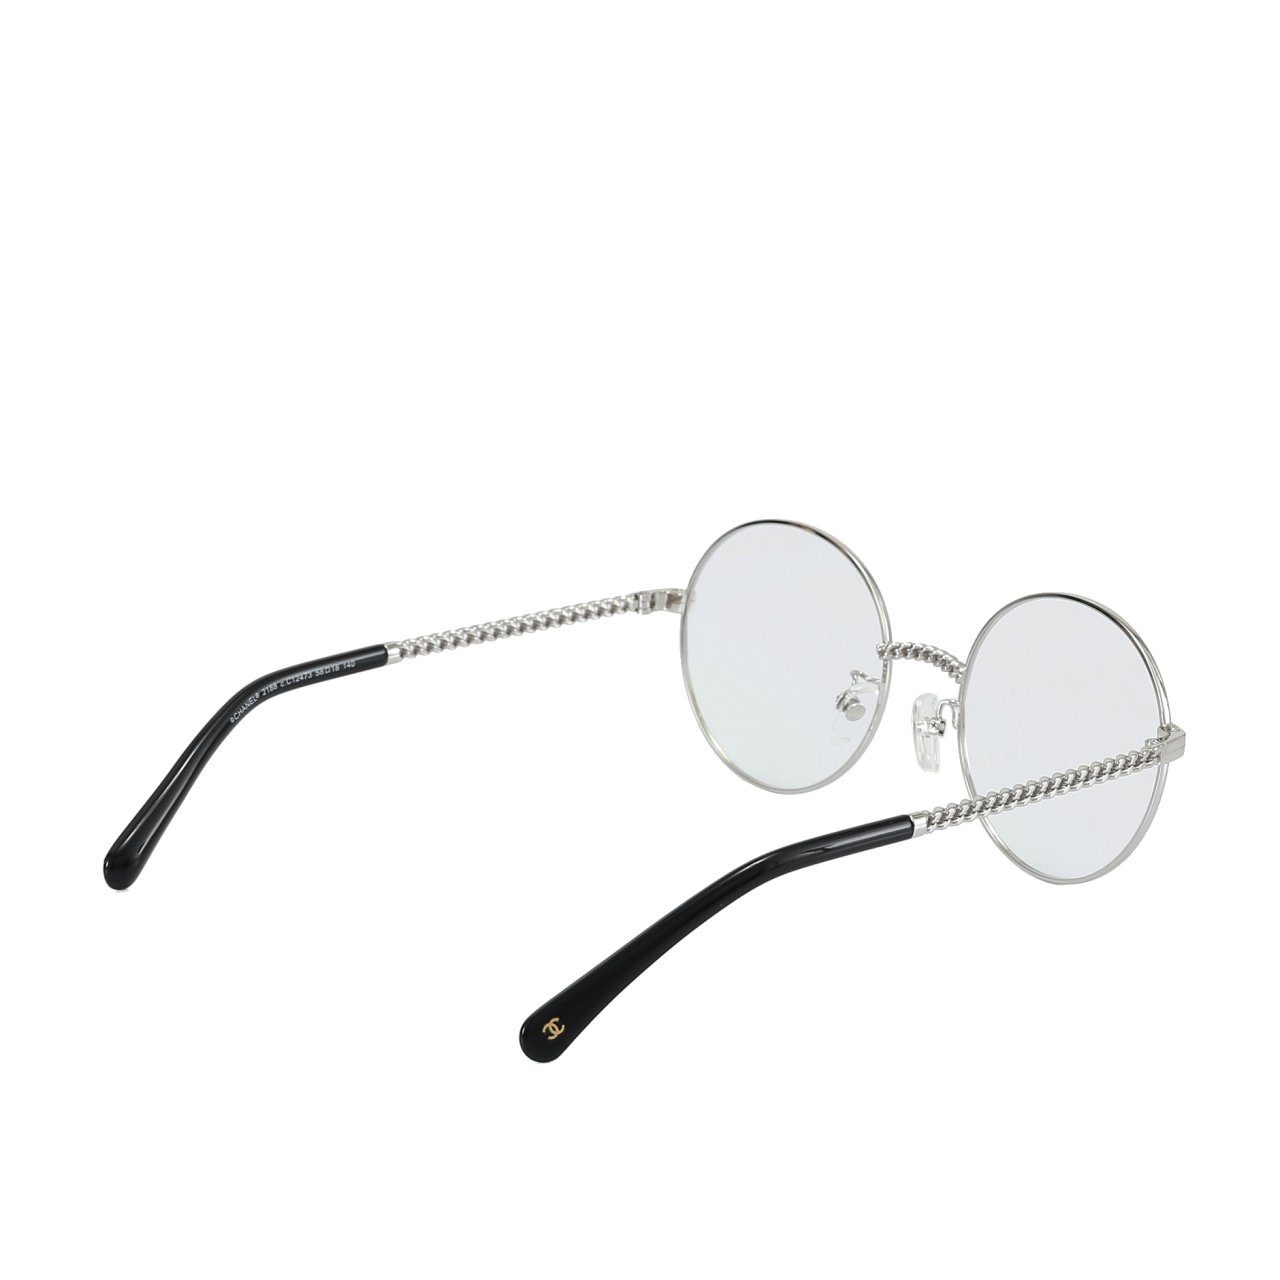 샤넬-안경줄-제니-안경2186c395-명품 레플리카 미러 SA급